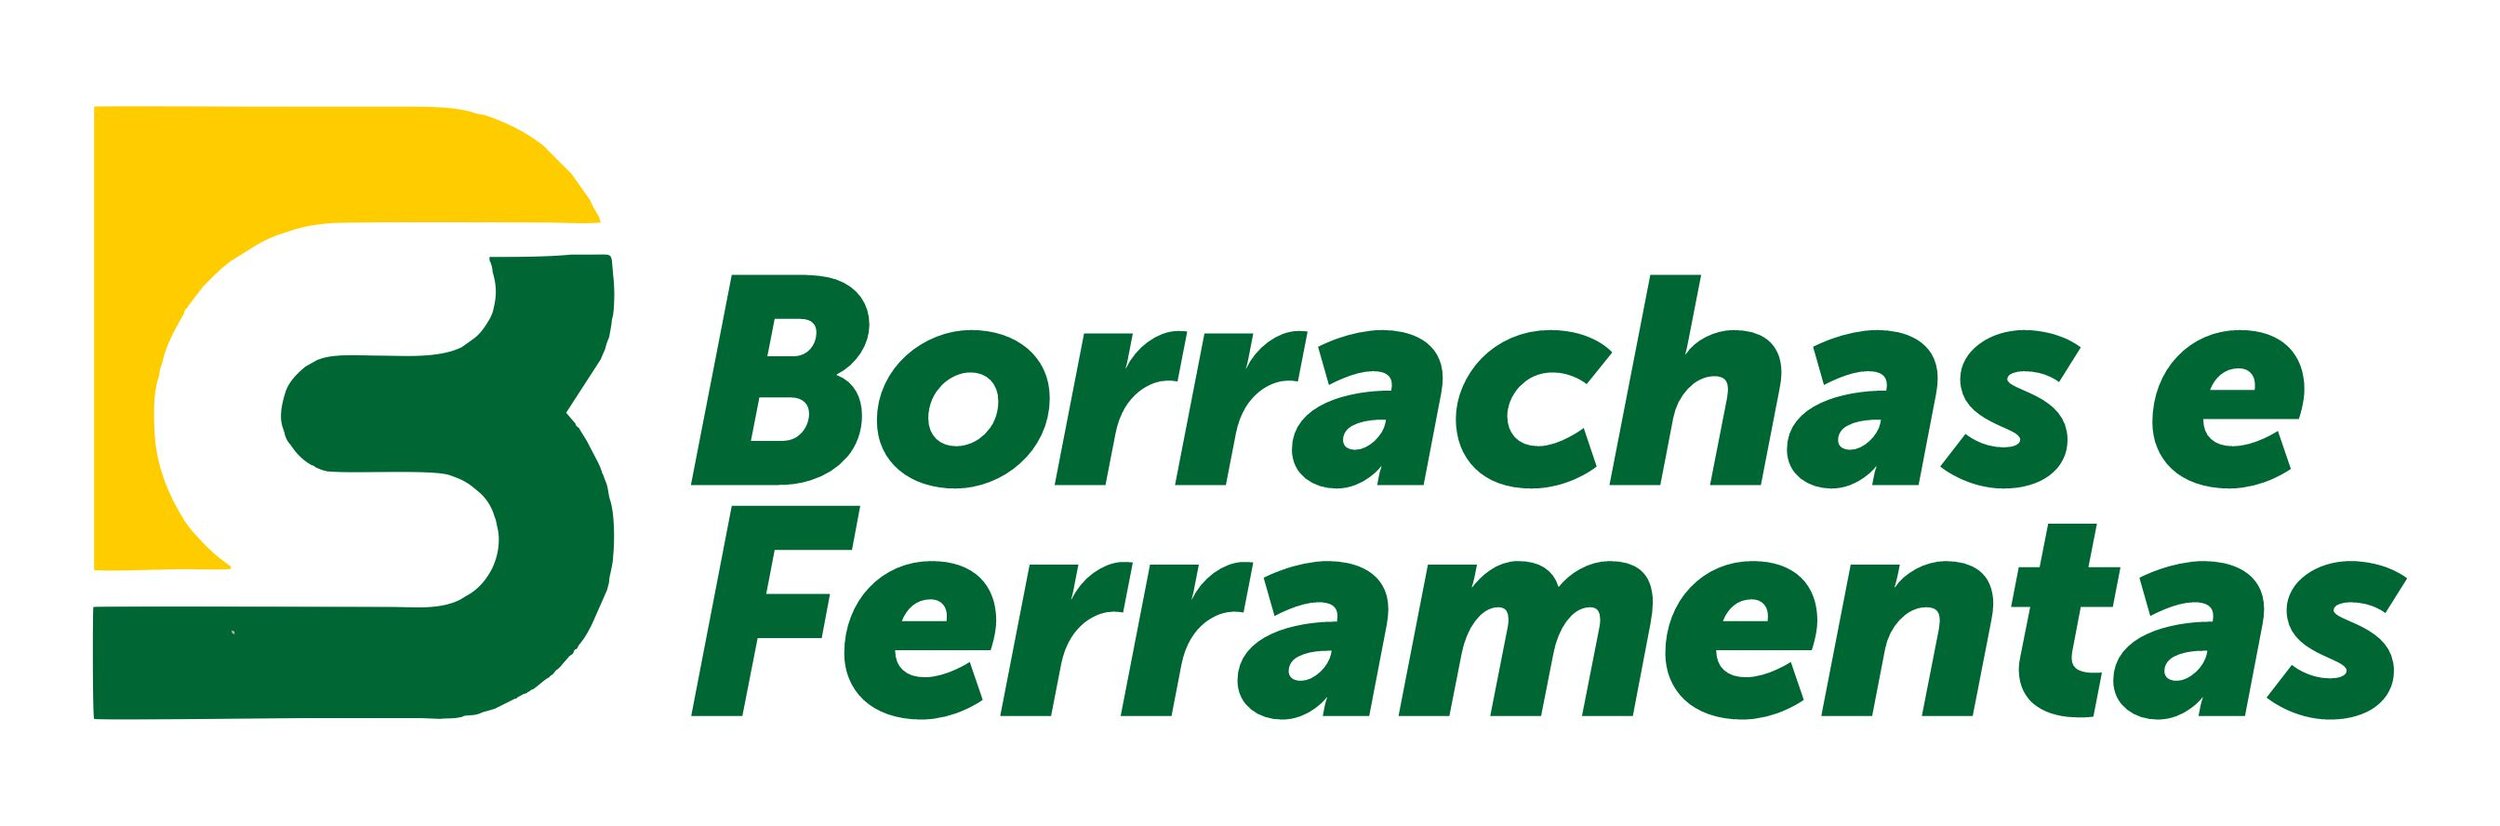 Borrachas Canaã - Logo.jpg